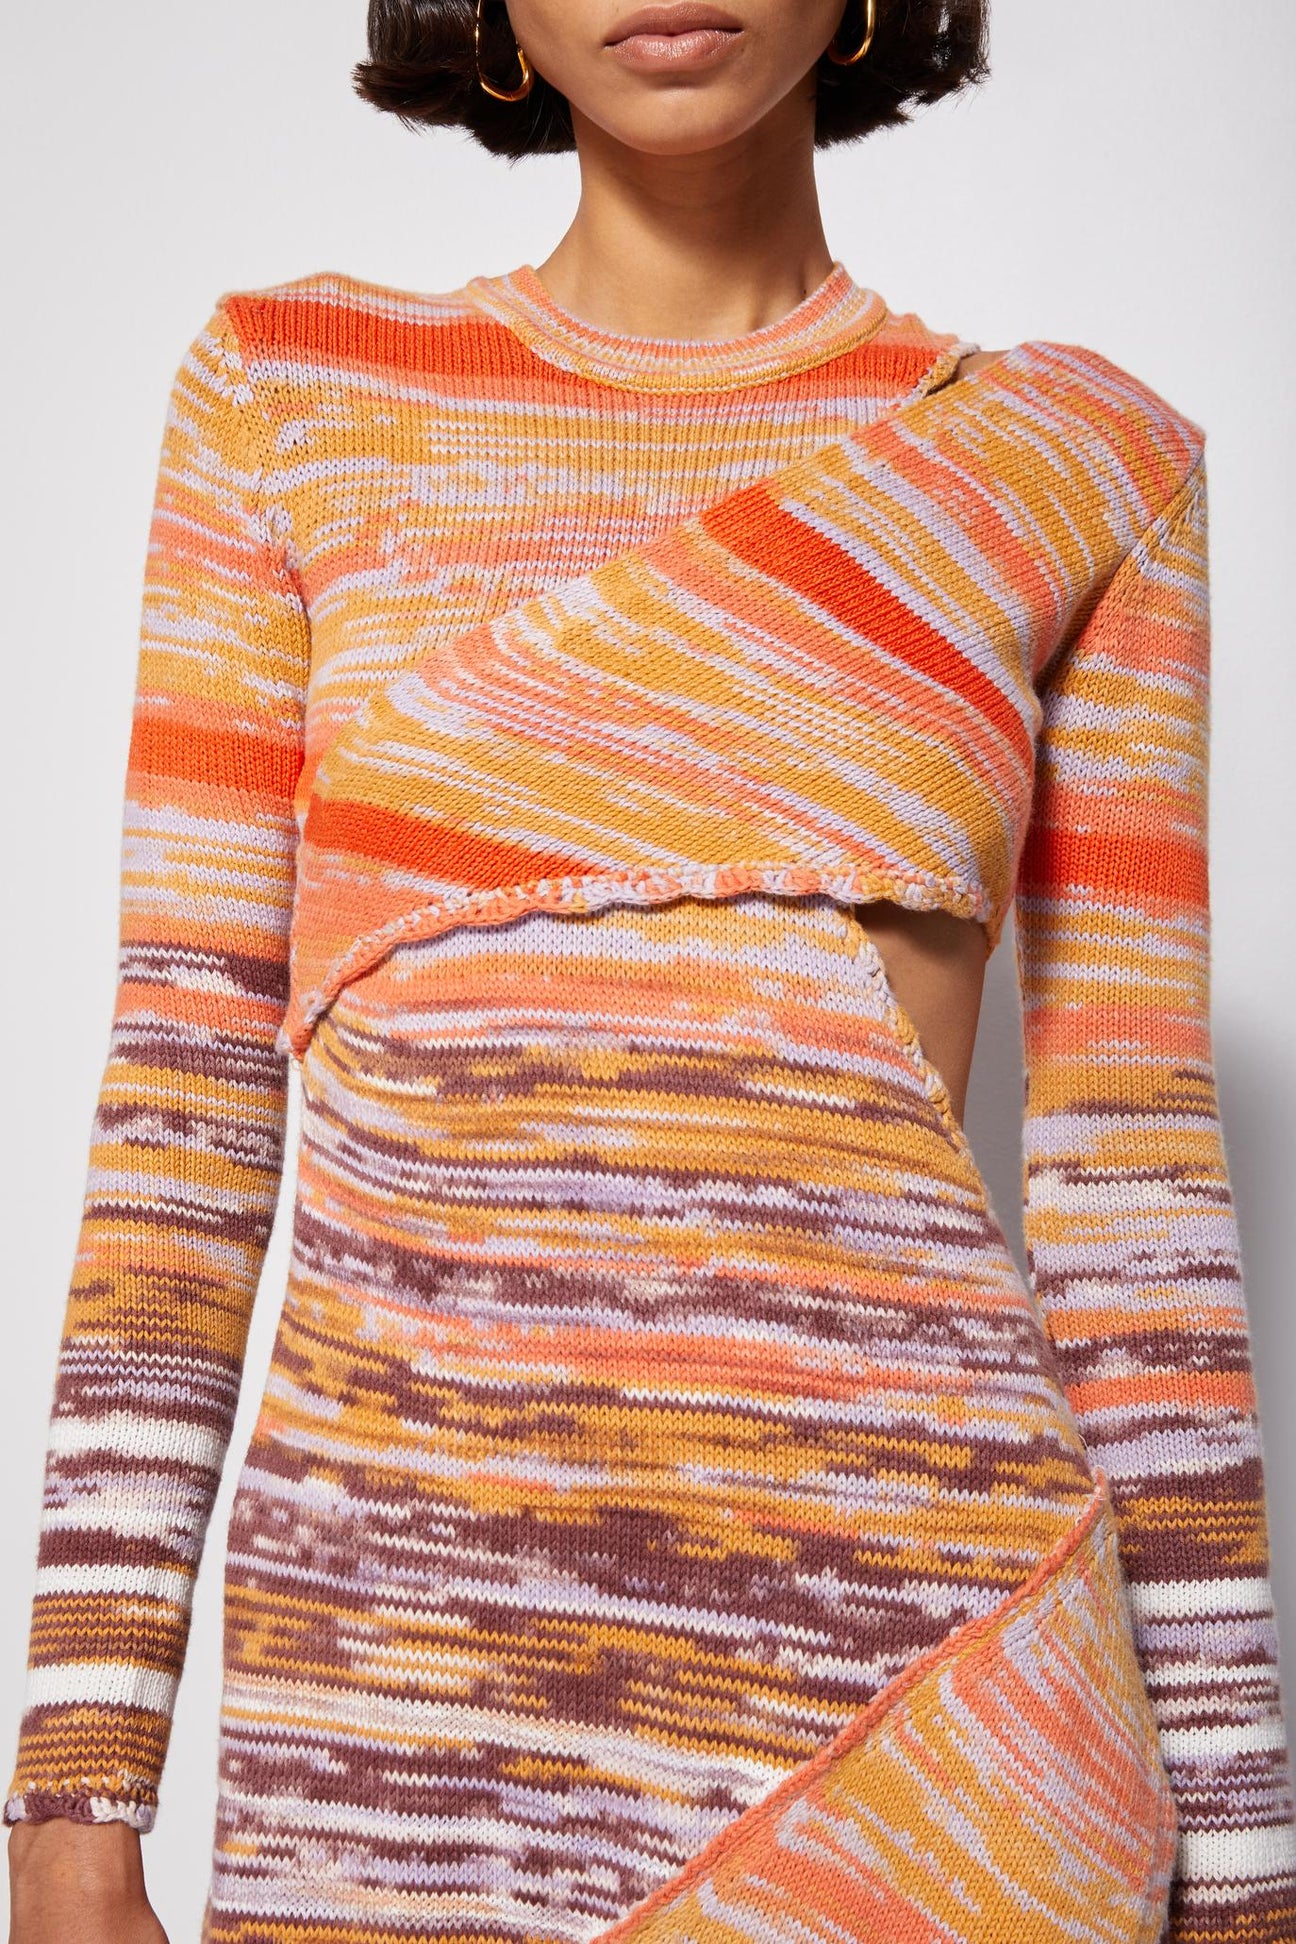 Spacedye Knit Midi Dress by SIMKHAI for $90